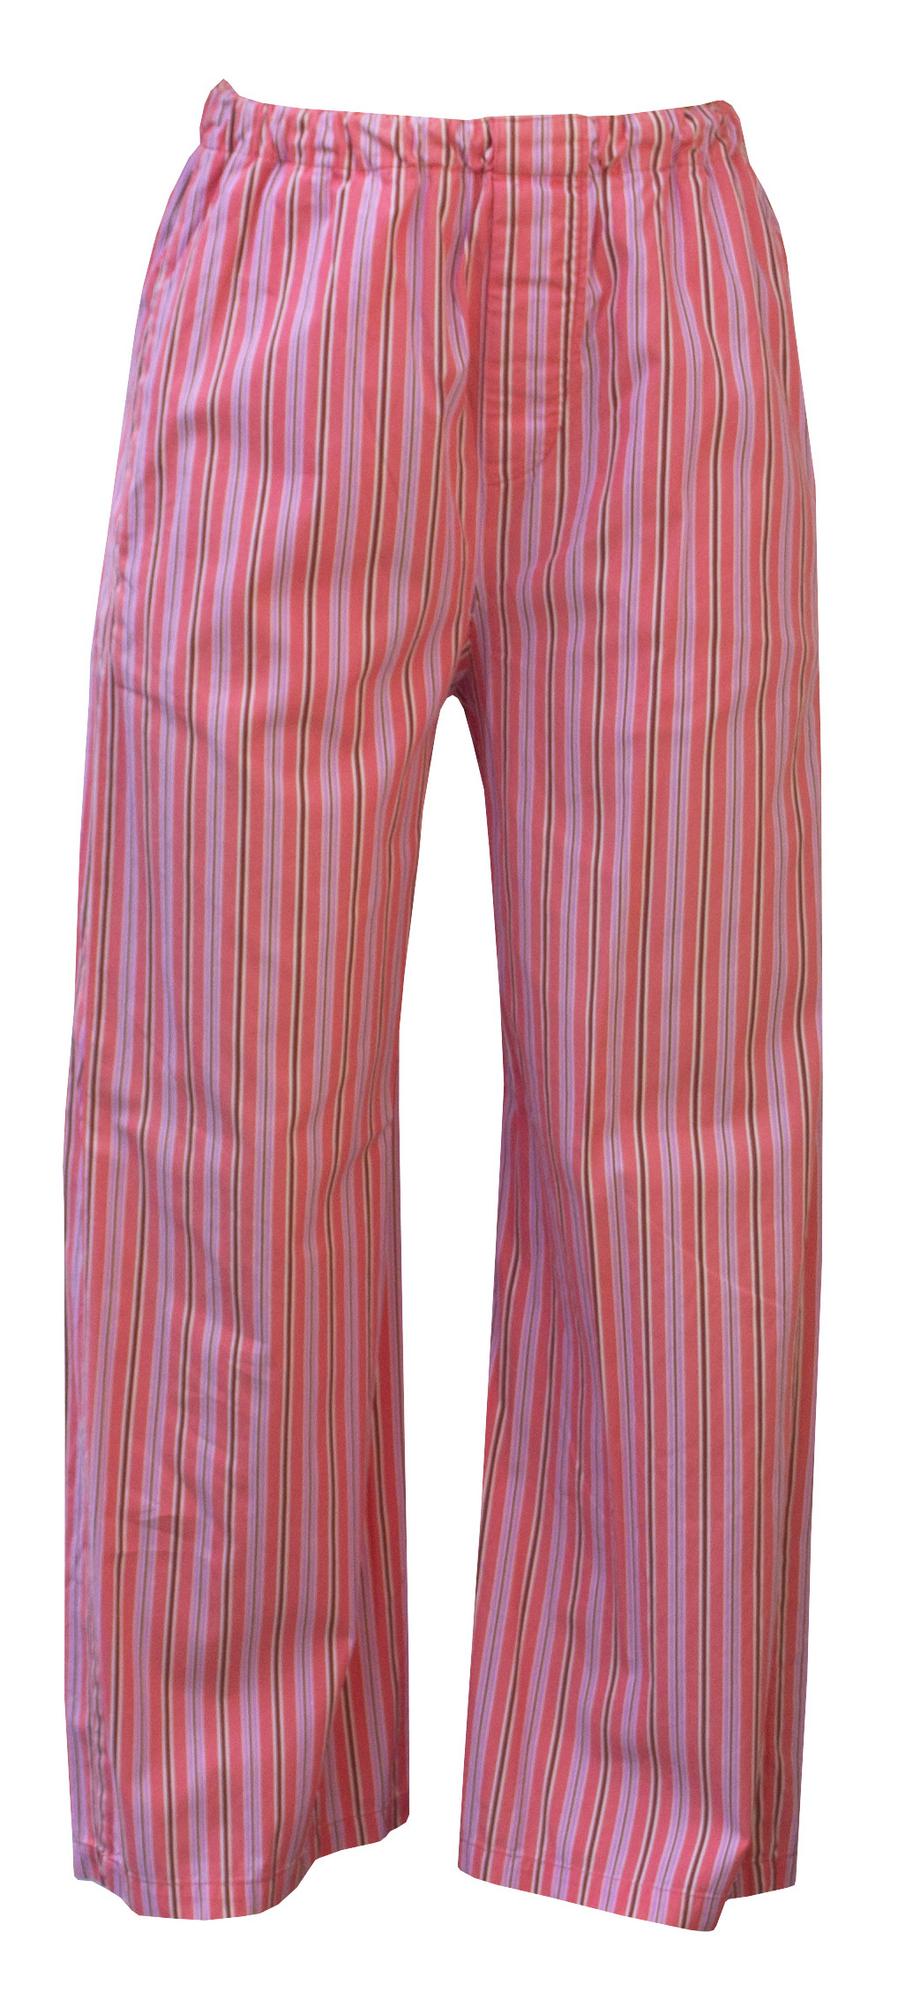 Vivienne Westwood PAJAMAS SUIT Description: Striped cotton pajama suit ...